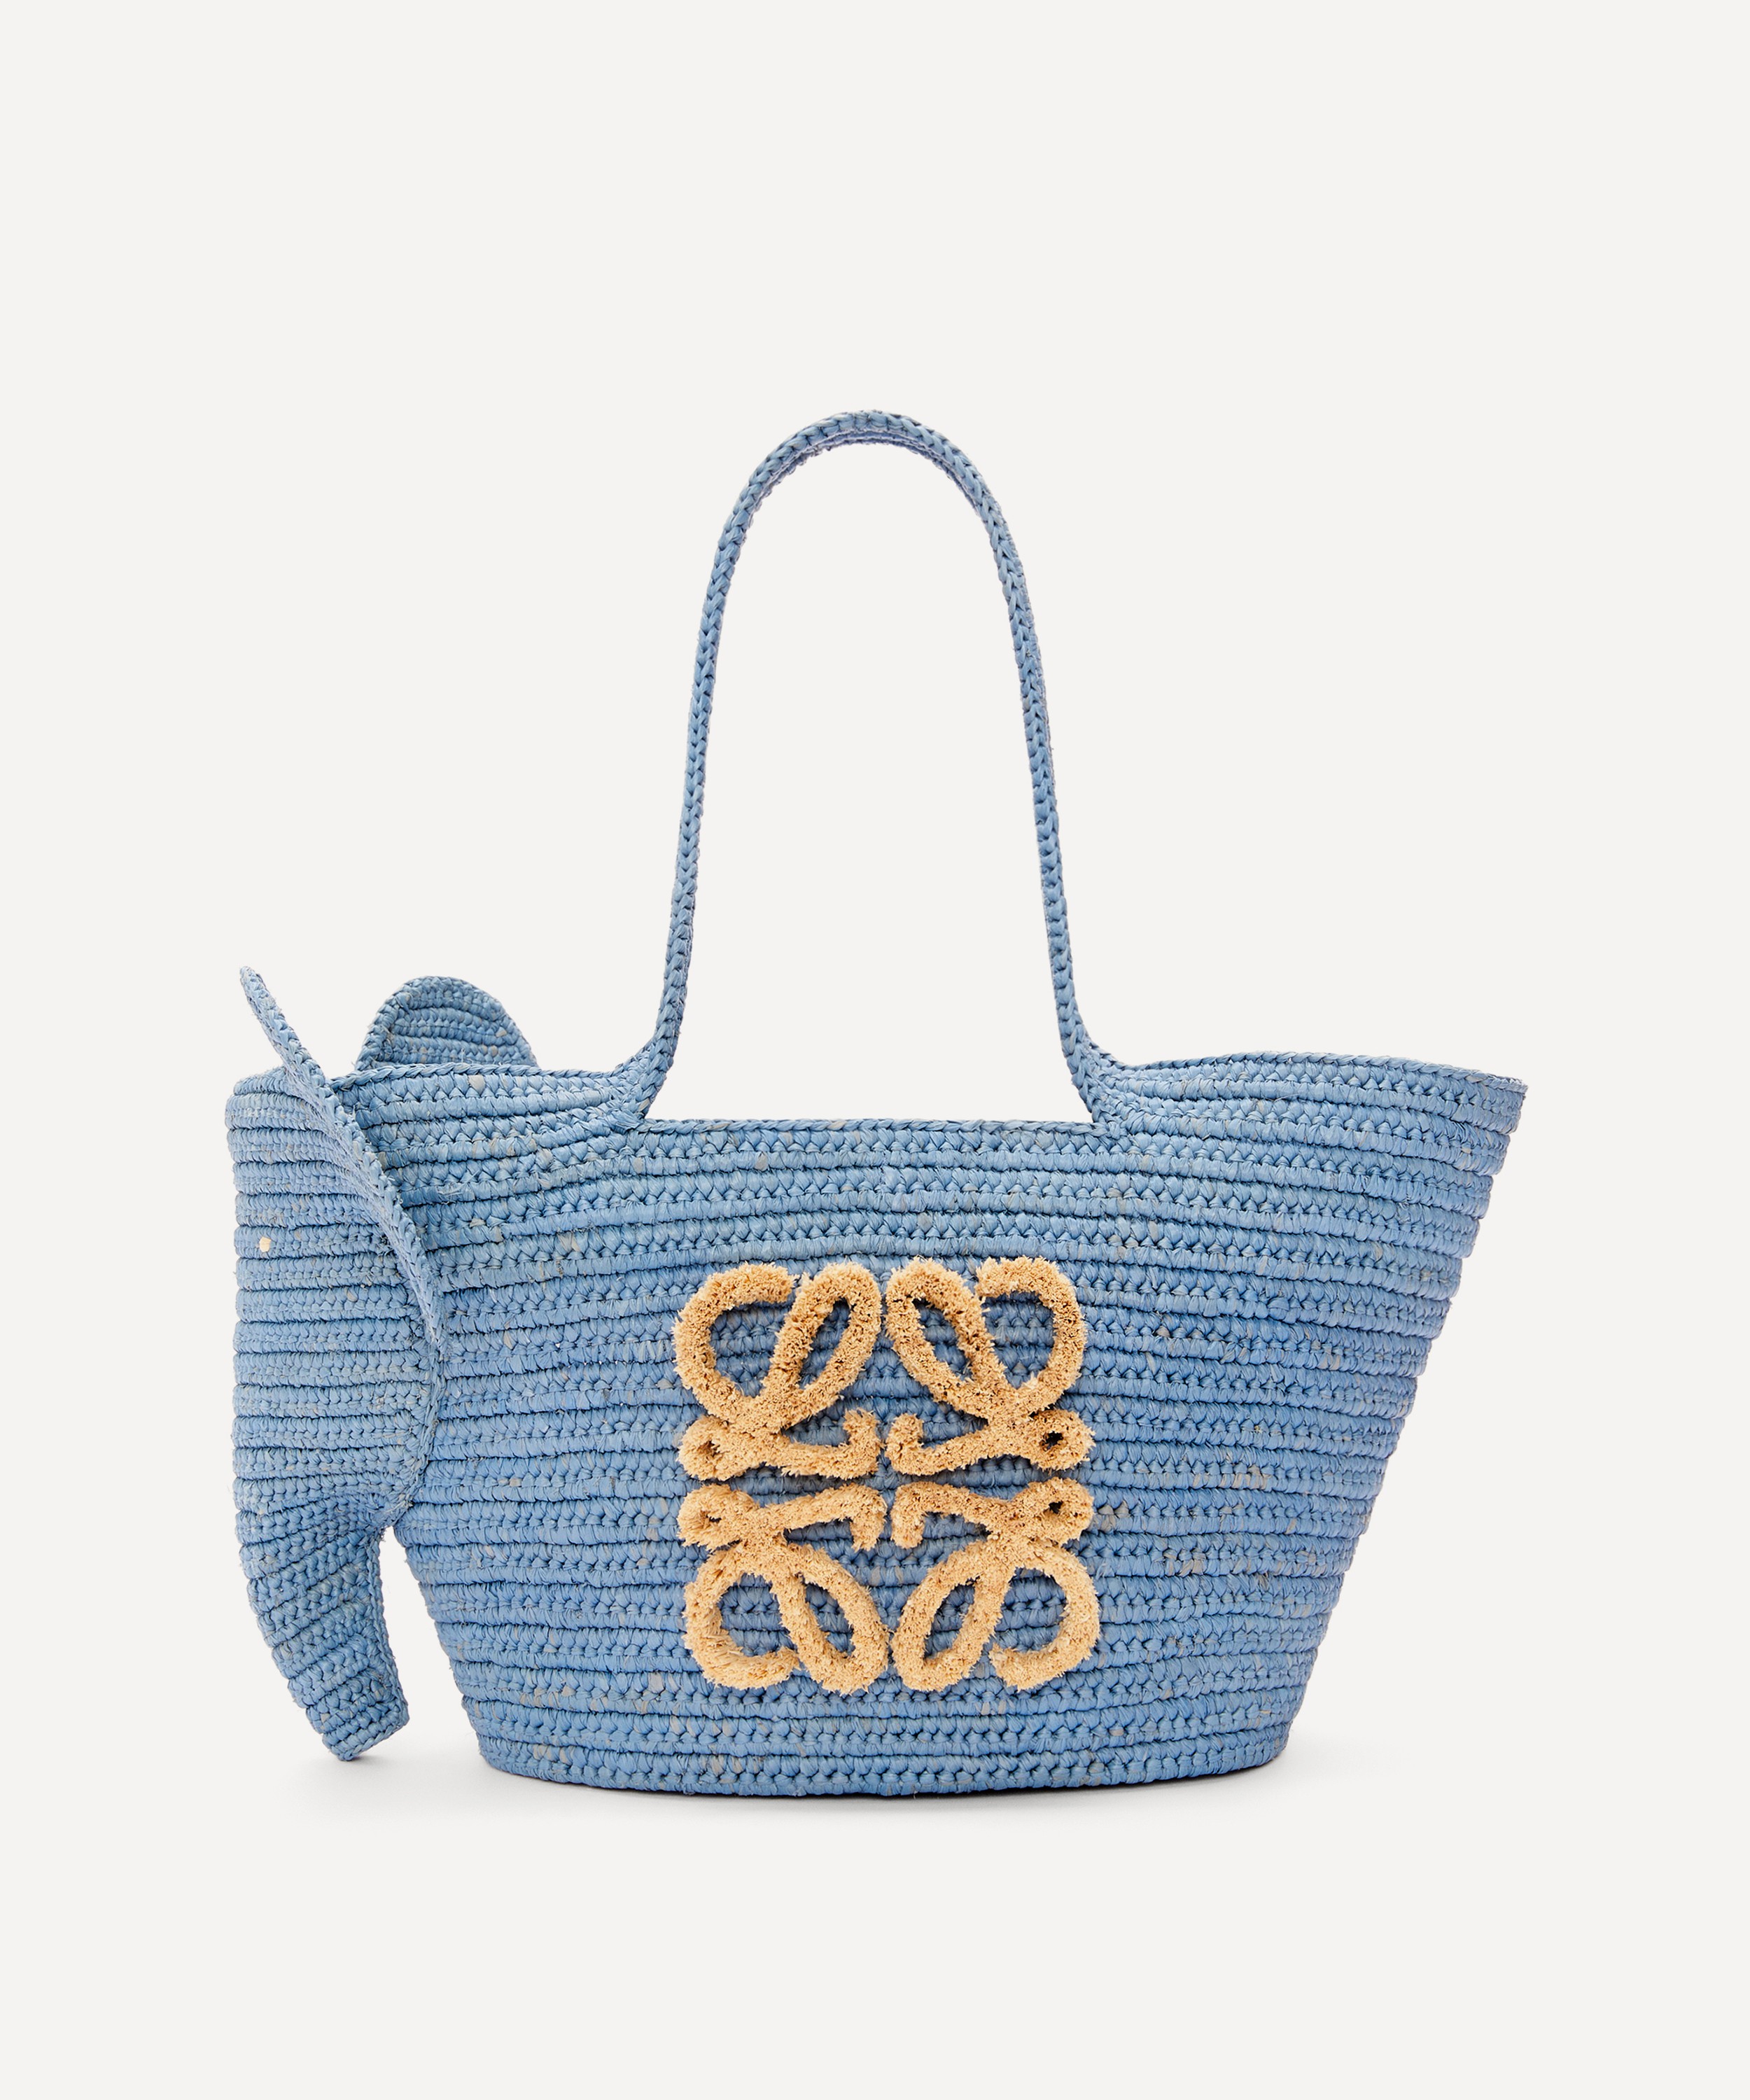 Loewe x Paula's Ibiza Small Elephant Basket Bag